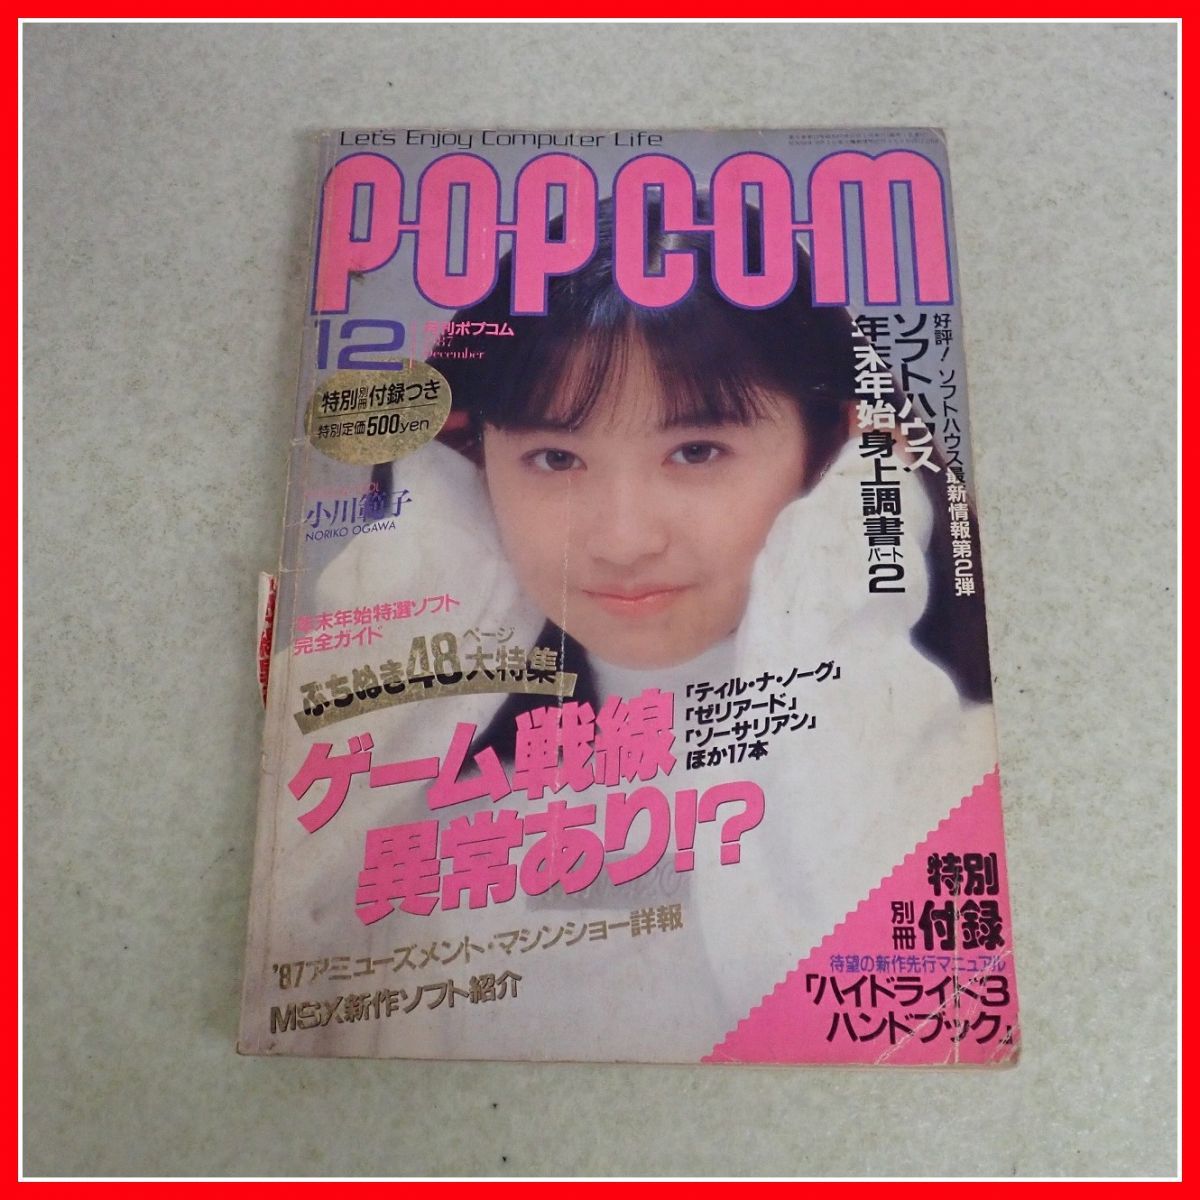 * журнал ежемесячный POPCOM/pop com 1987 год продажа минут 4 шт. комплект компьютер относящийся Shogakukan Inc. [10